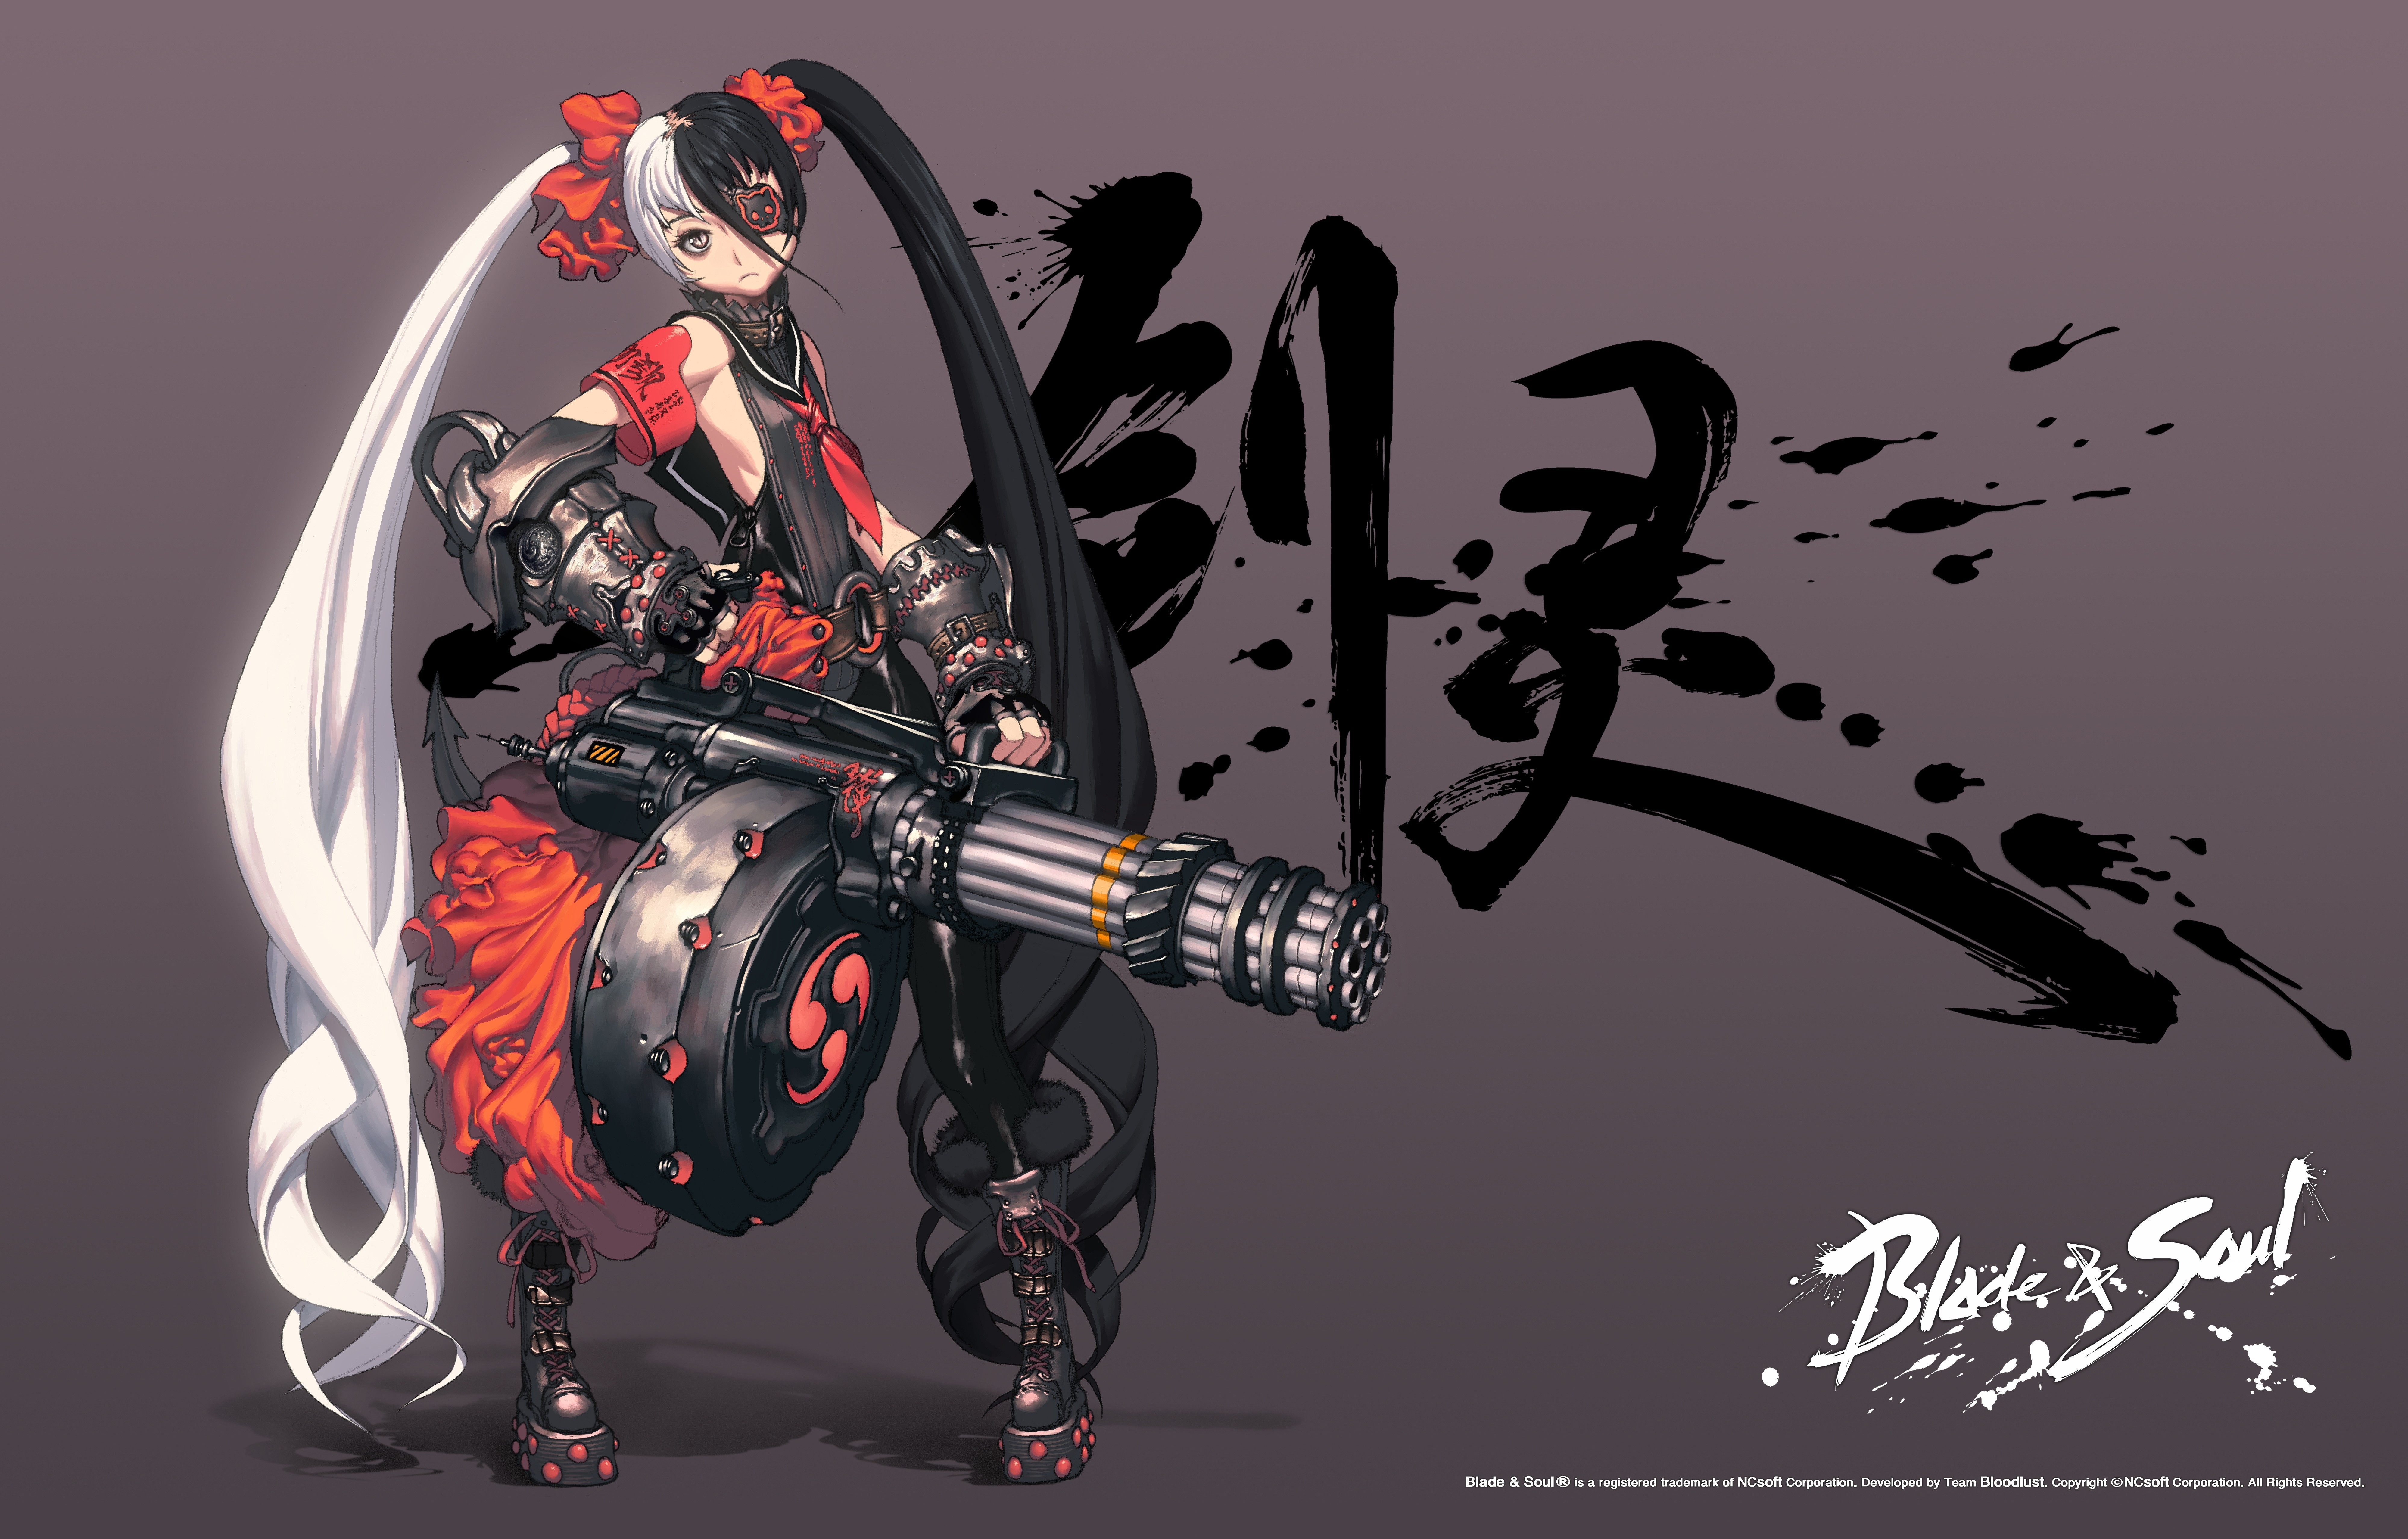 Blade&Soul, Po Hwa Ran, Anime Girls Wallpaper